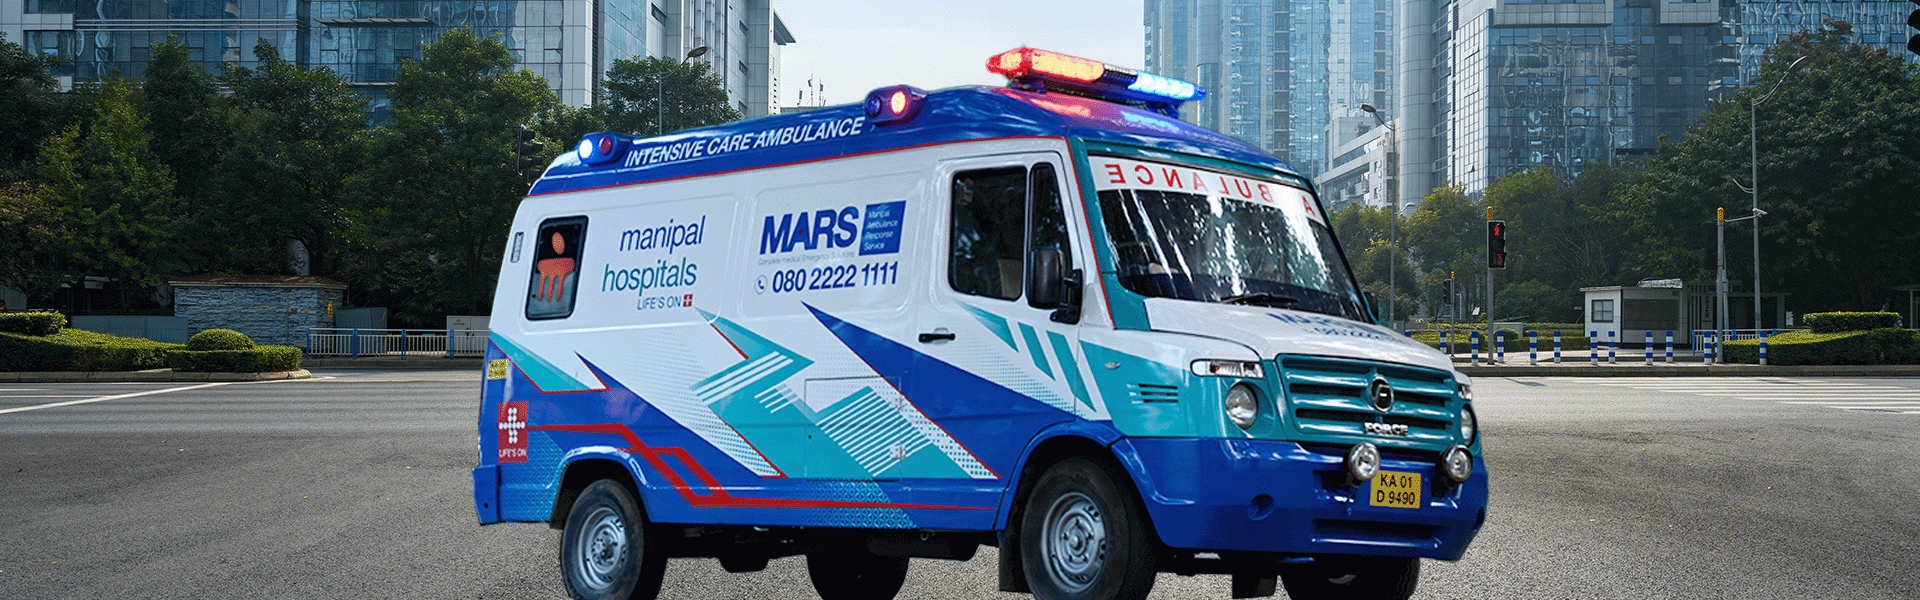 24 Hours Emergency Ambulance Service in Yeshwanthpur, Bangalore -Manipal Hospitals